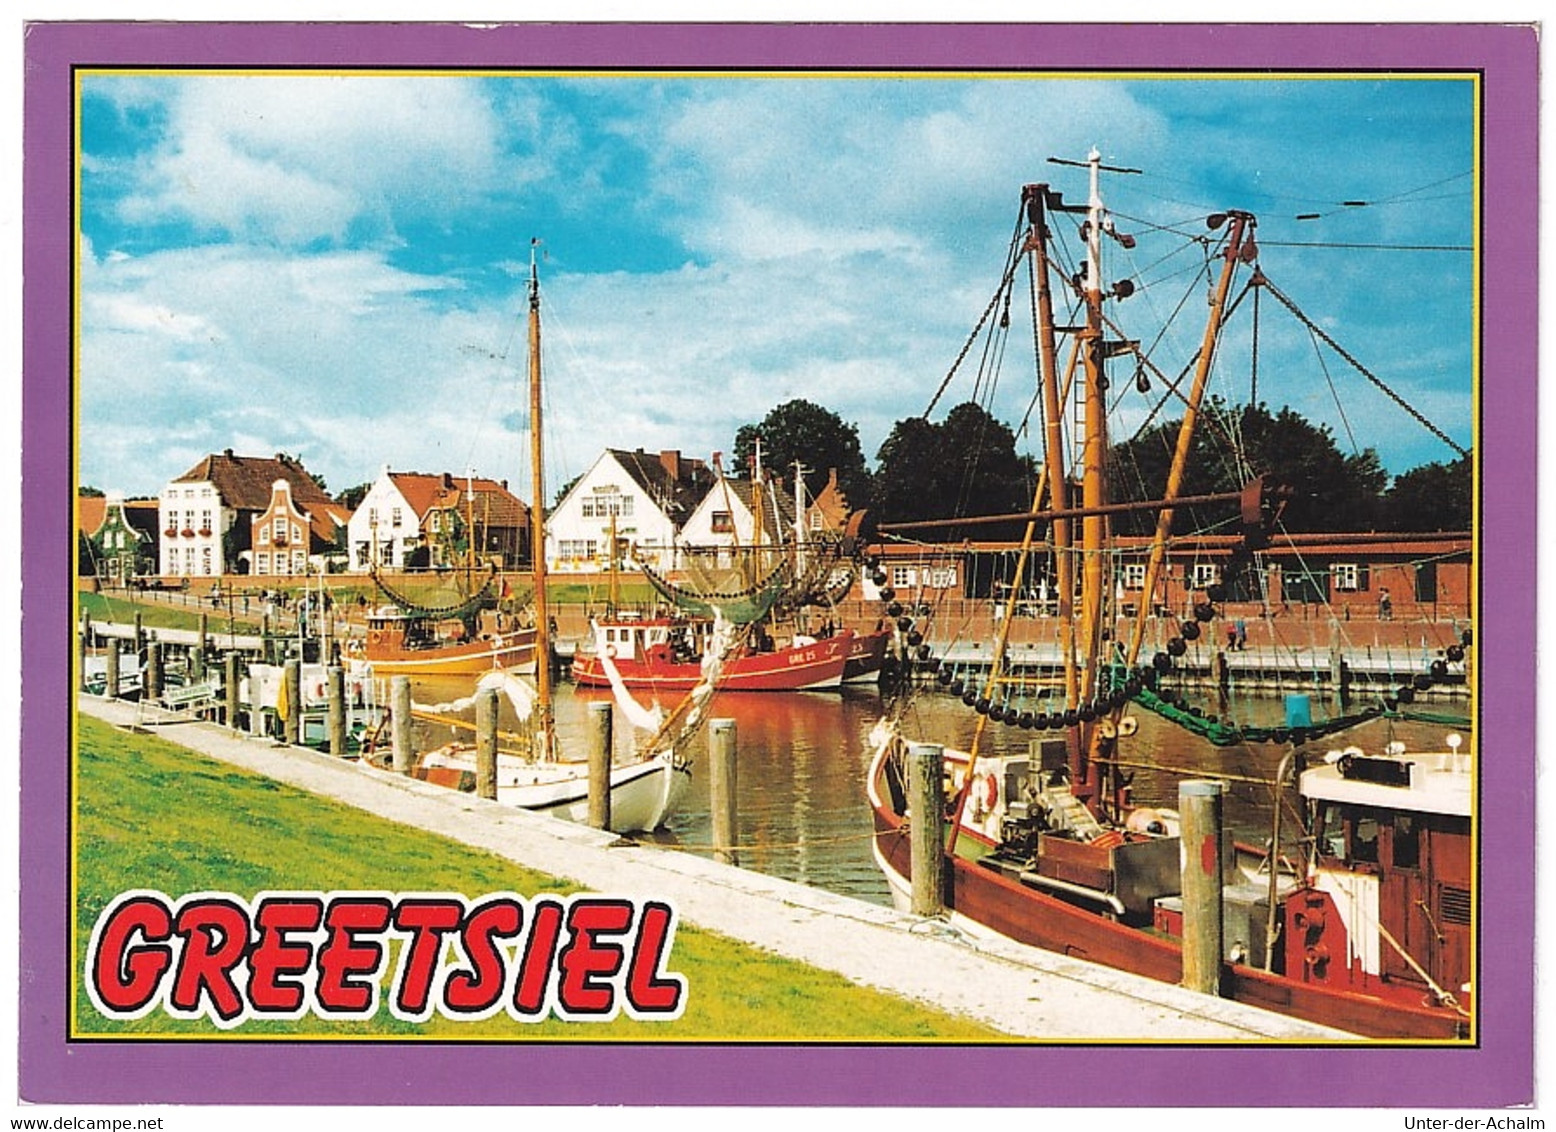 Greetsiel (Krummhörn) An Der Ostfriesischen Westküste - Am Hafen - 2000 - Krummhoern